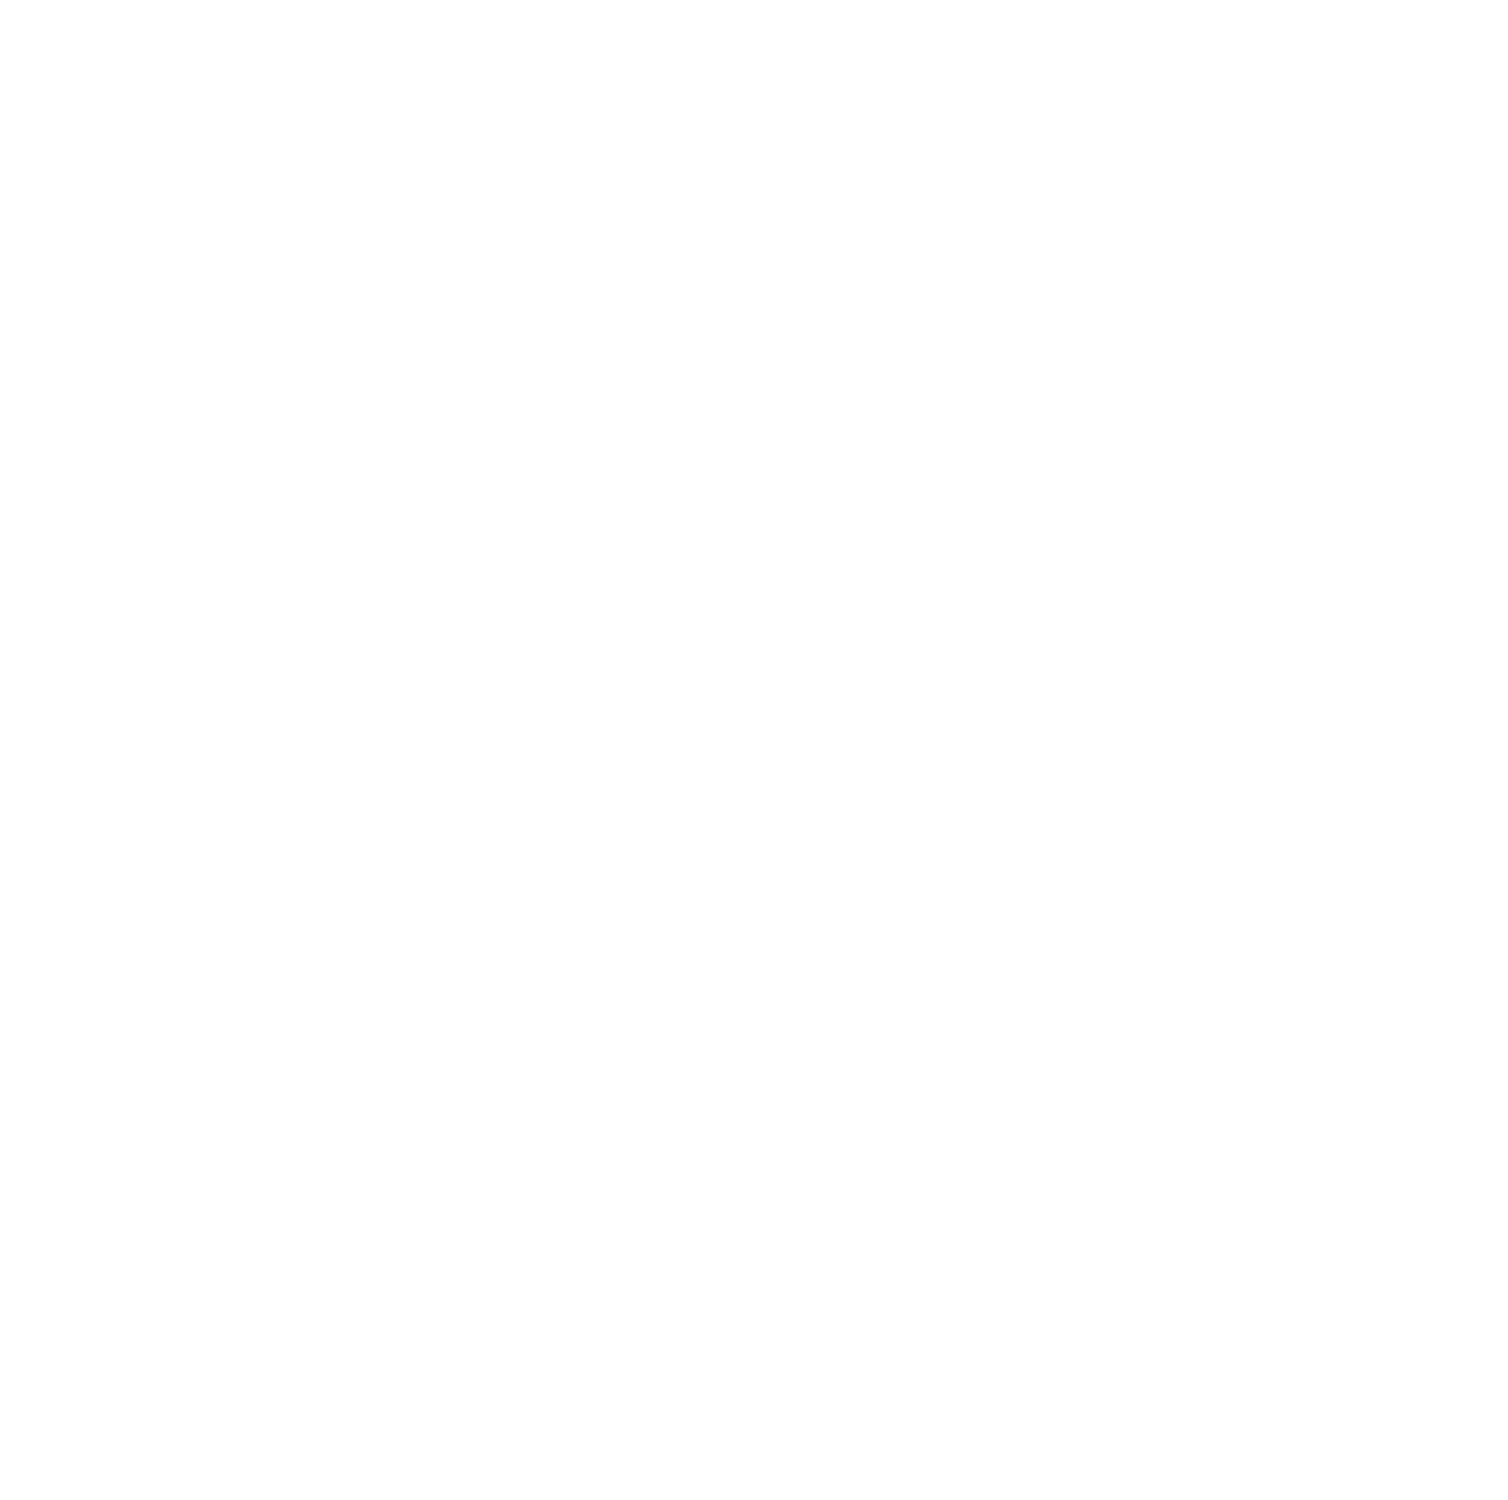 St. Vincent De Paul 